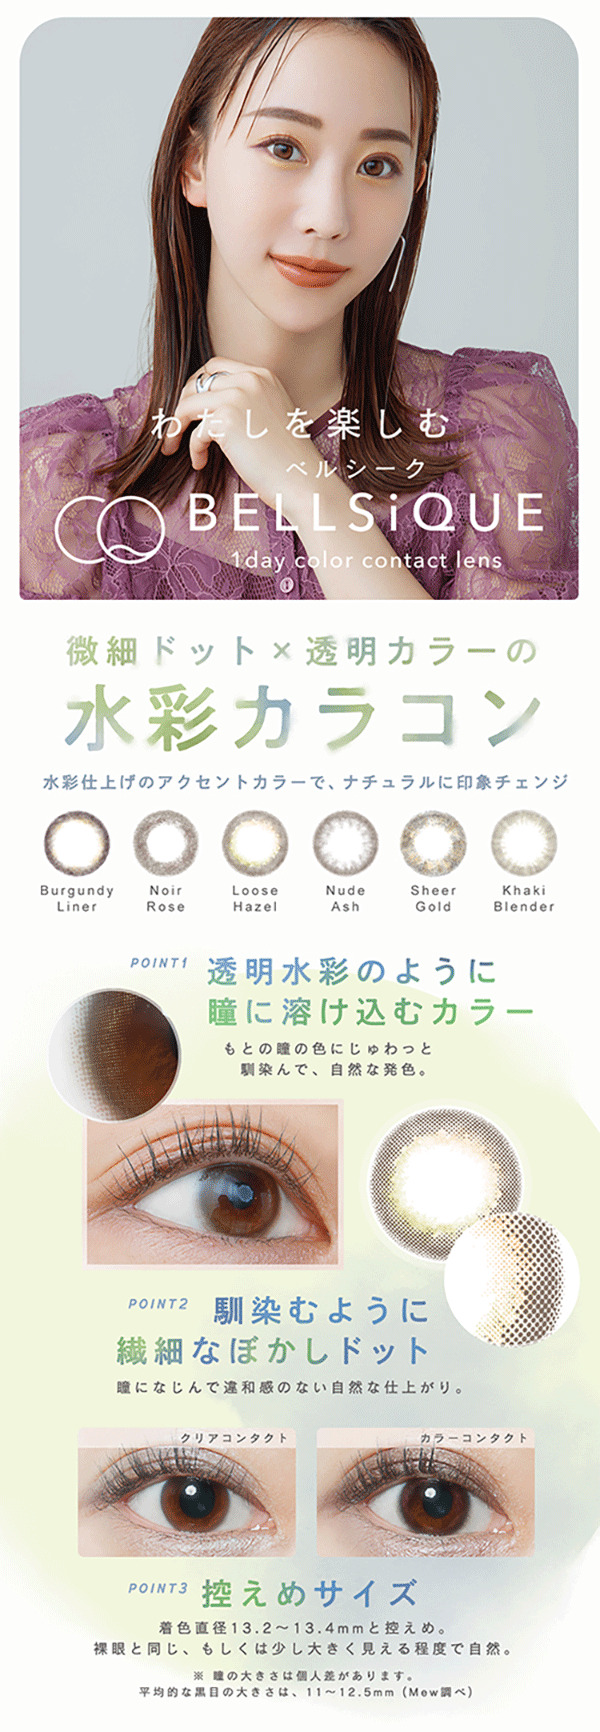 秋倉諒子さんがイメージモデルのカラコン、ベルシークのレンズのメインビジュアルとレンズの特徴を説明する画像